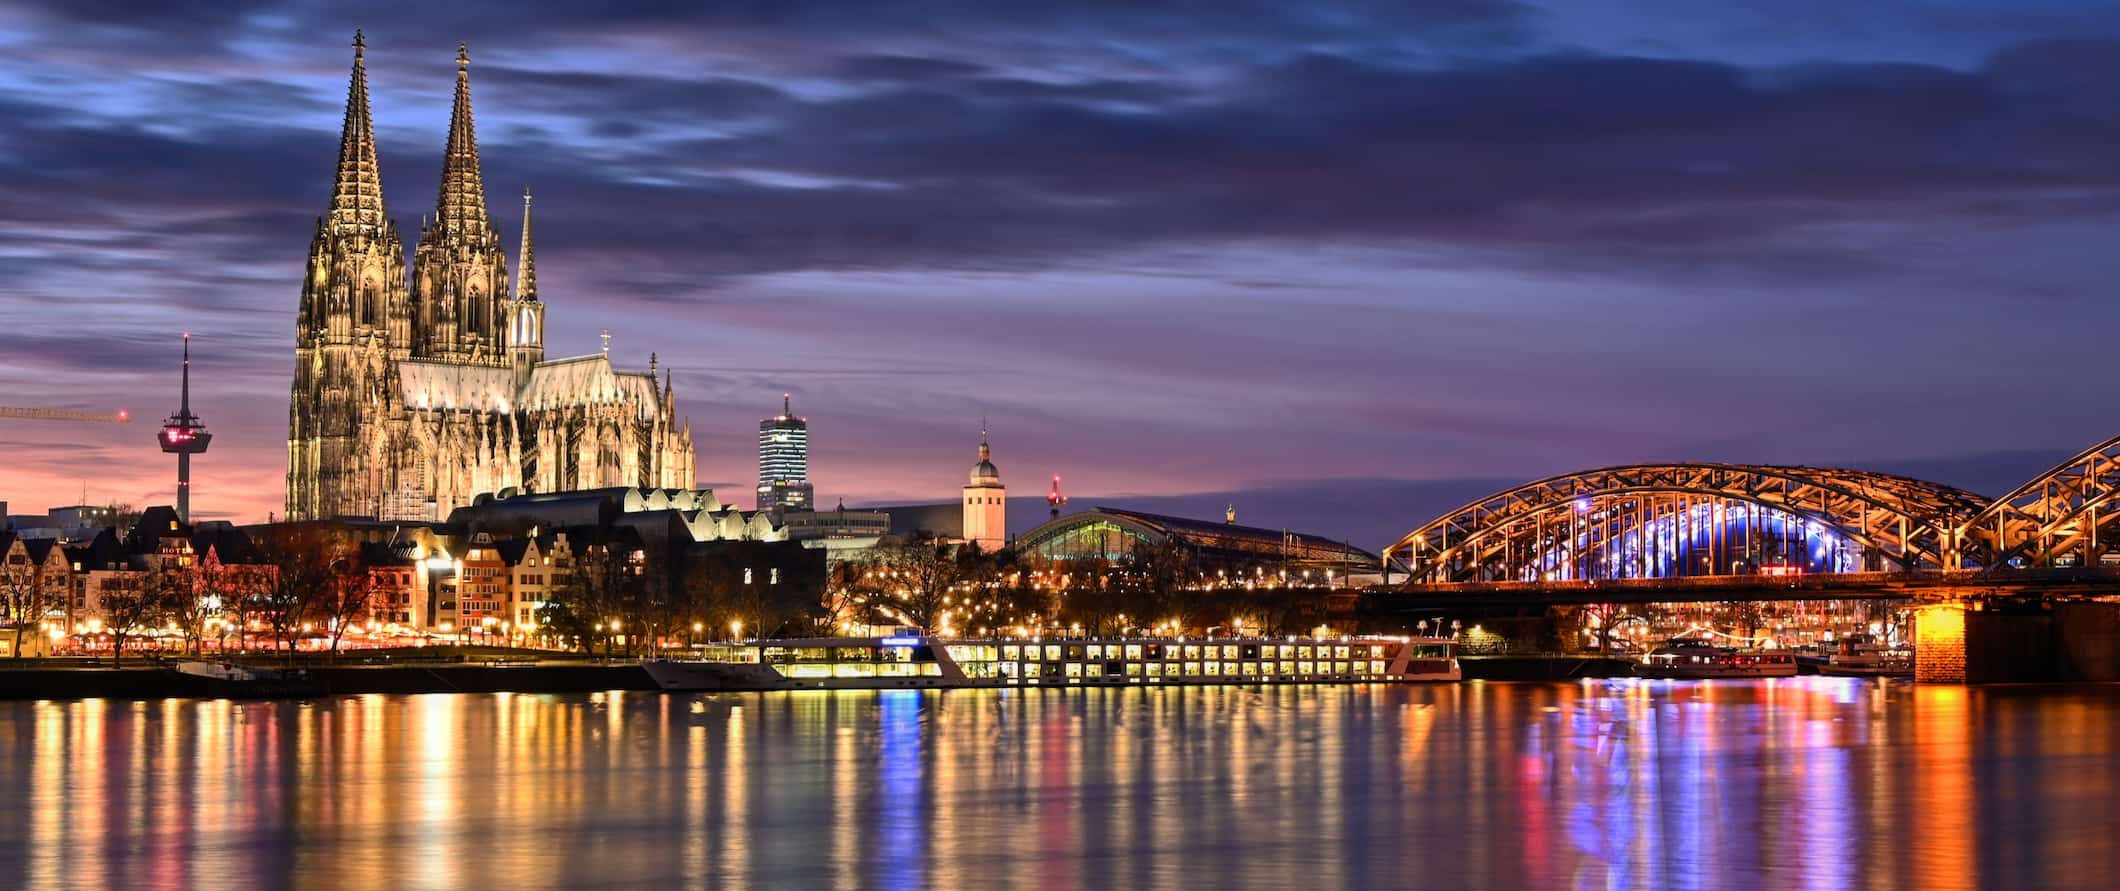 Vista da famosa catedral e ponte iluminada à noite em Colônia, Alemanha